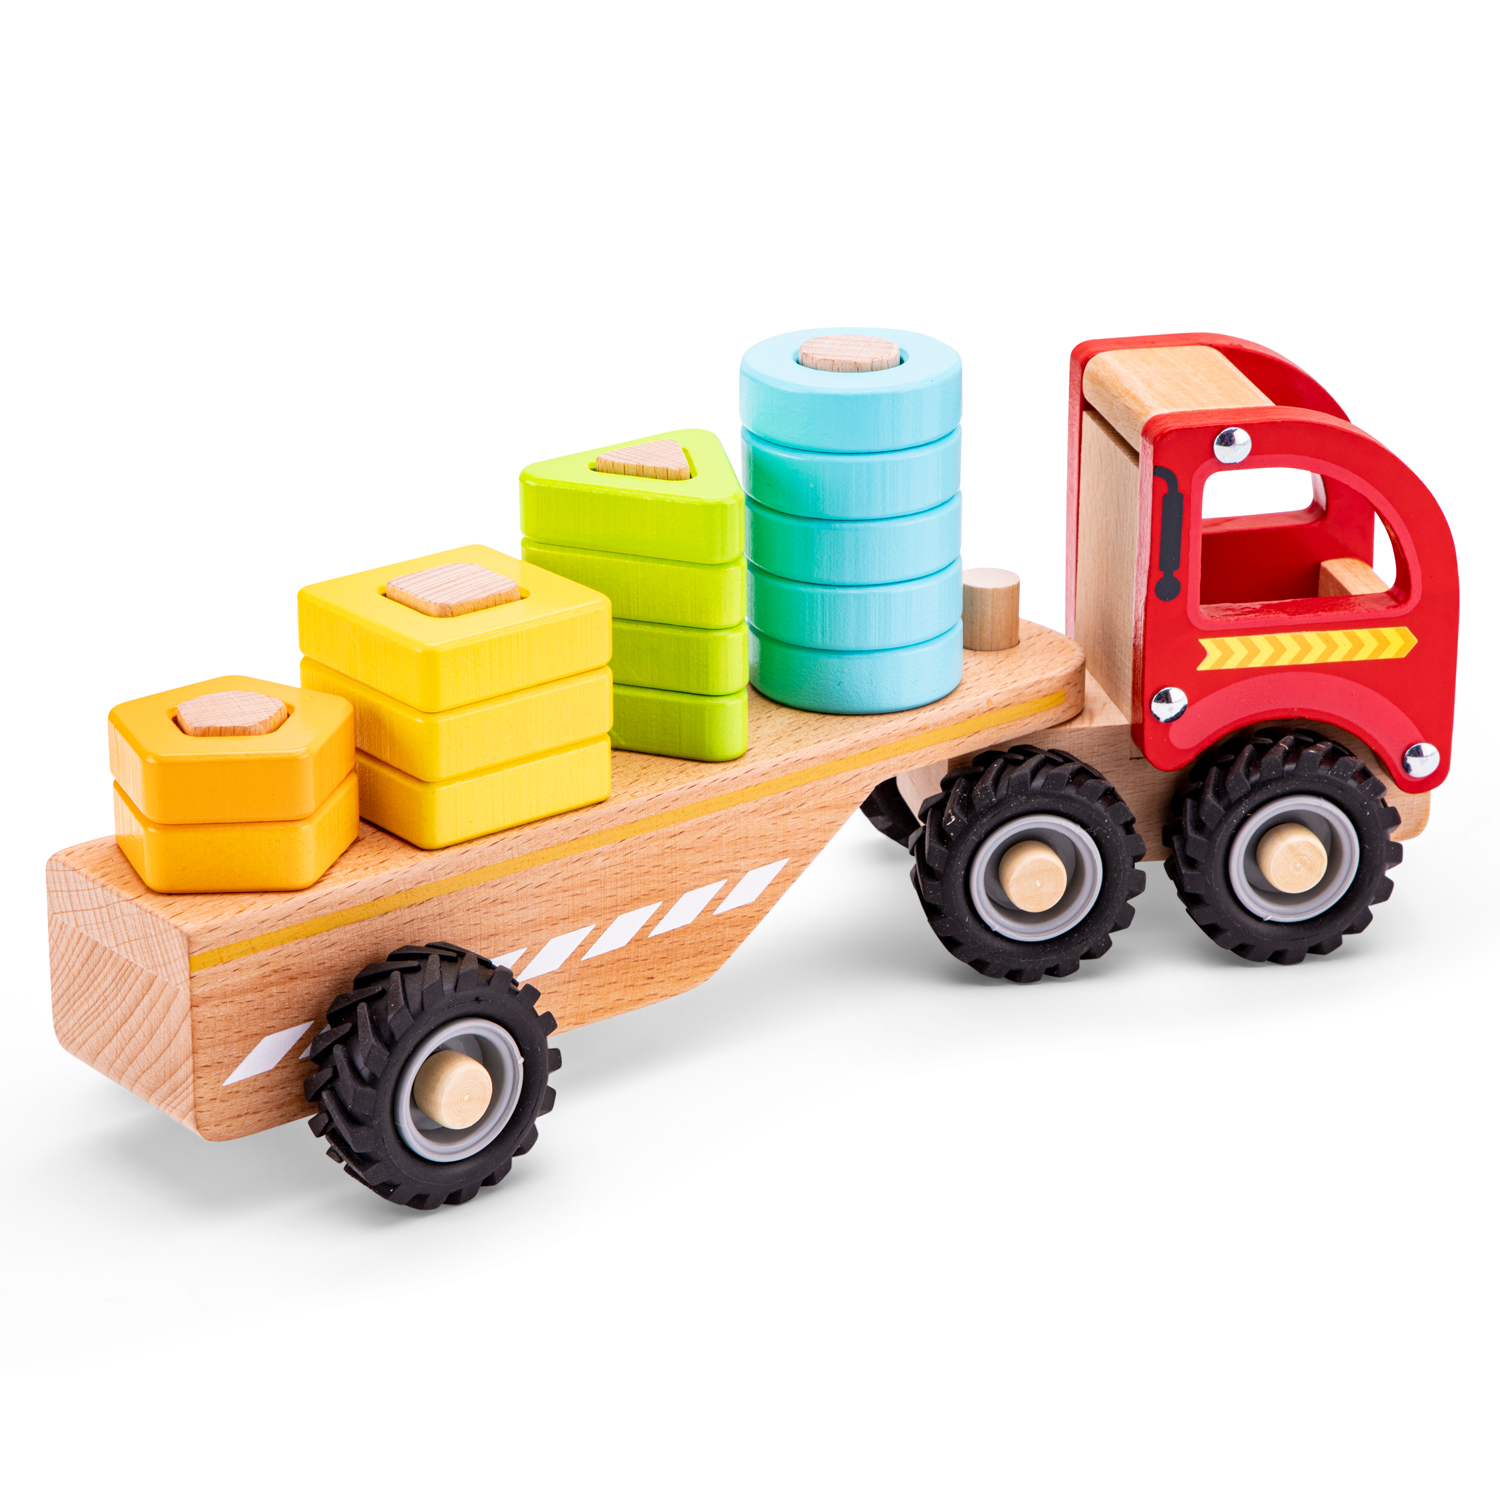 Autotransporter mit Steckformen Abschleppwagen u Steckfiguren aus Holz